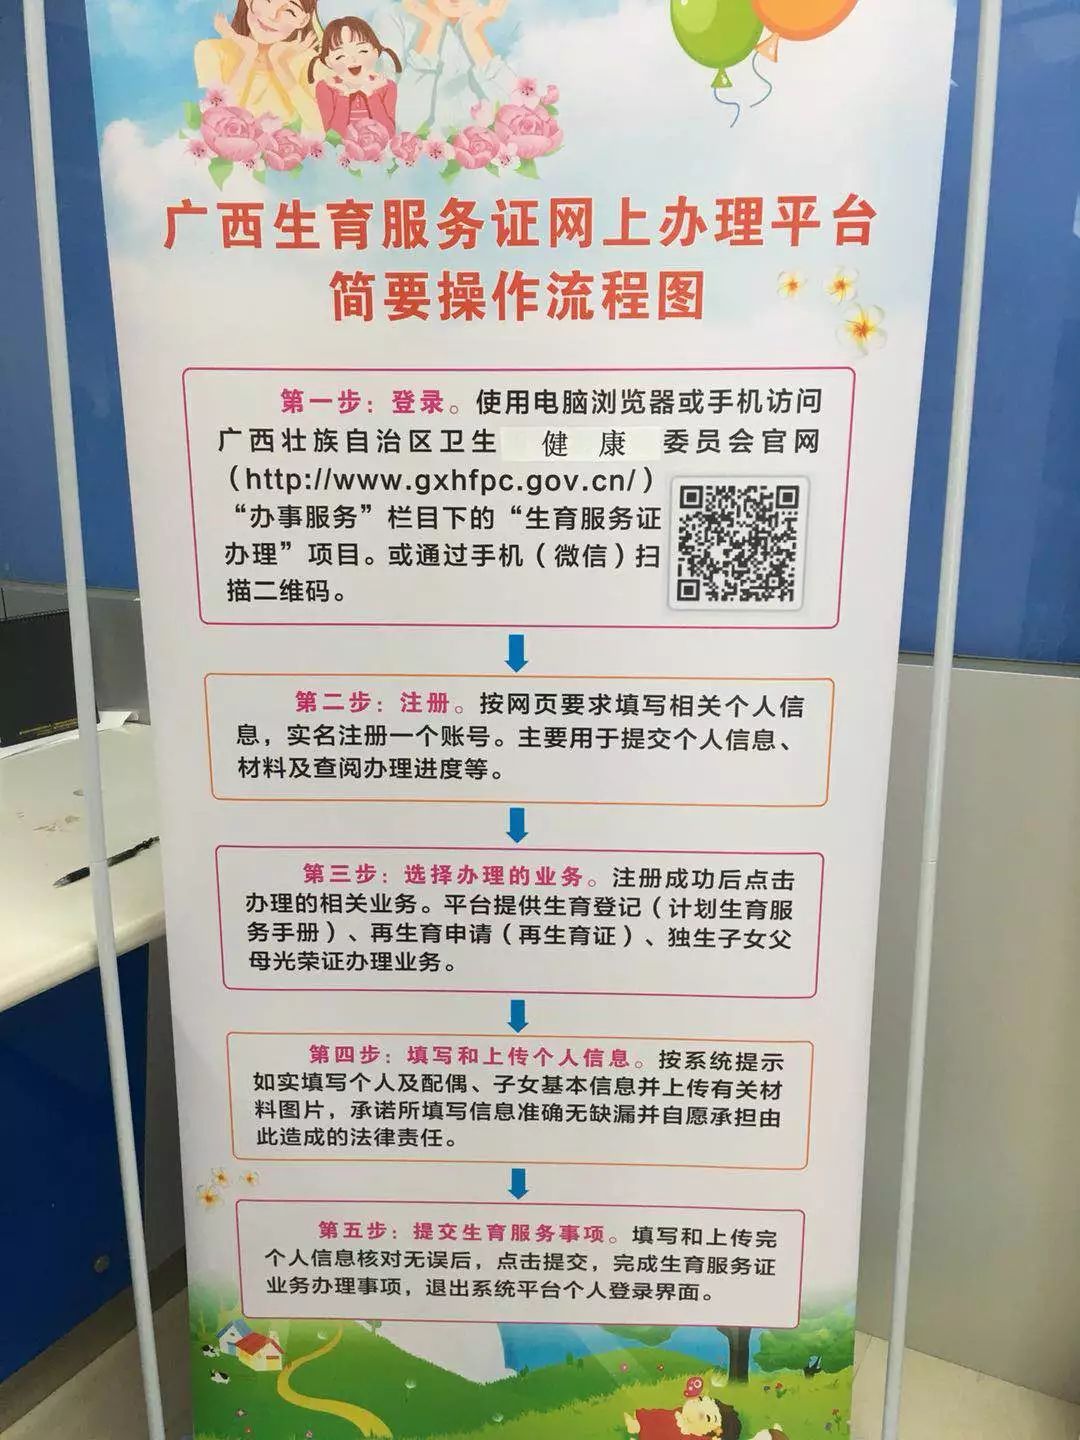 广西生育服务证网上办理平台开通启用后,全区将实现生育服务证办理